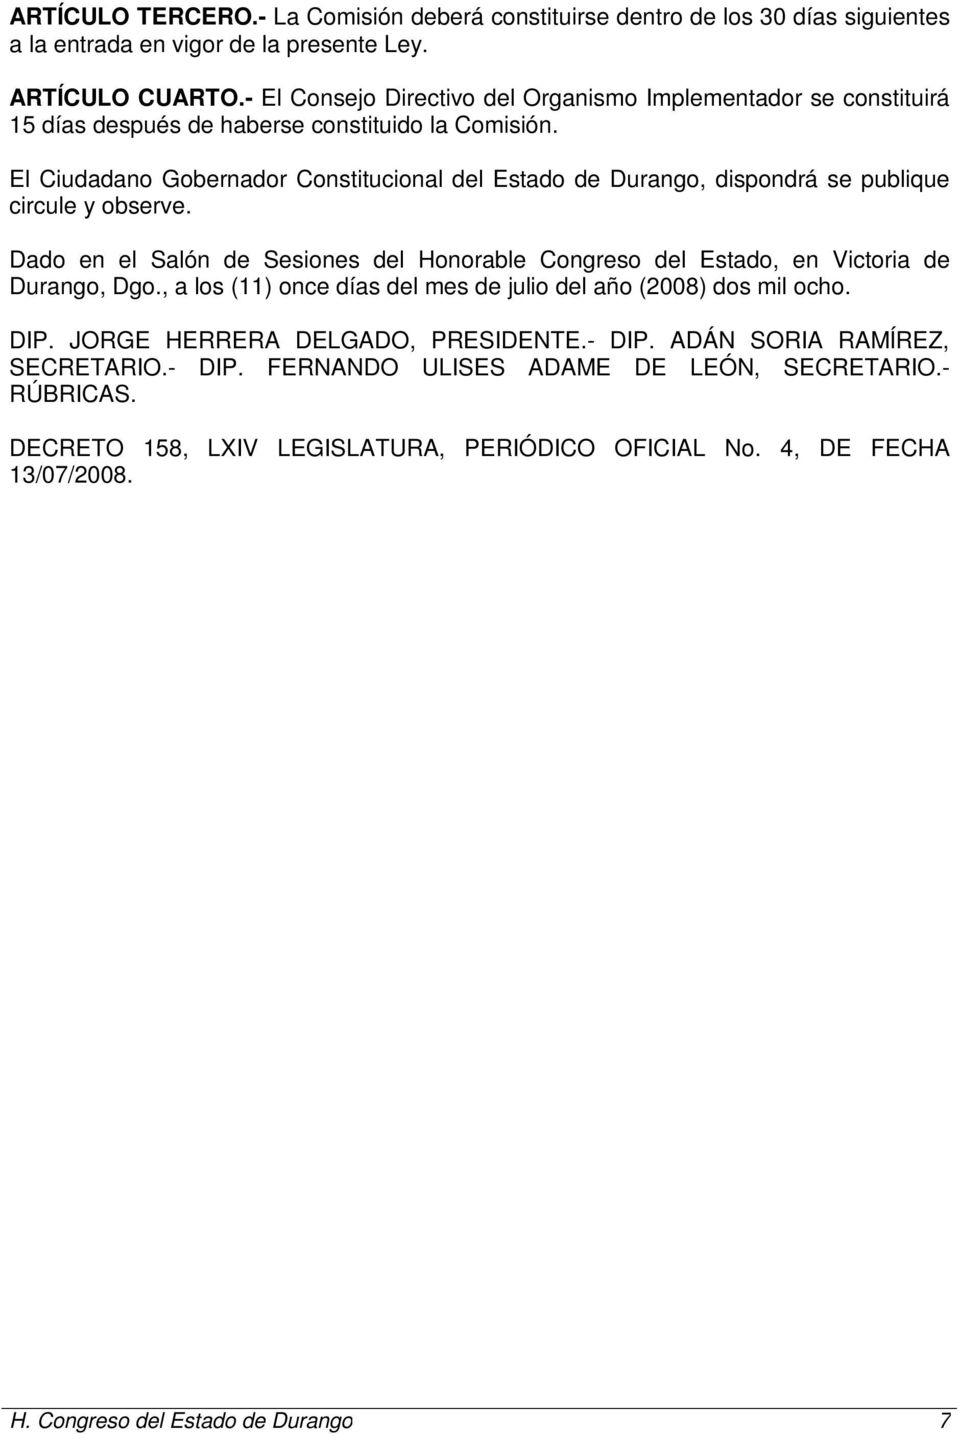 El Ciudadano Gobernador Constitucional del Estado de Durango, dispondrá se publique circule y observe.